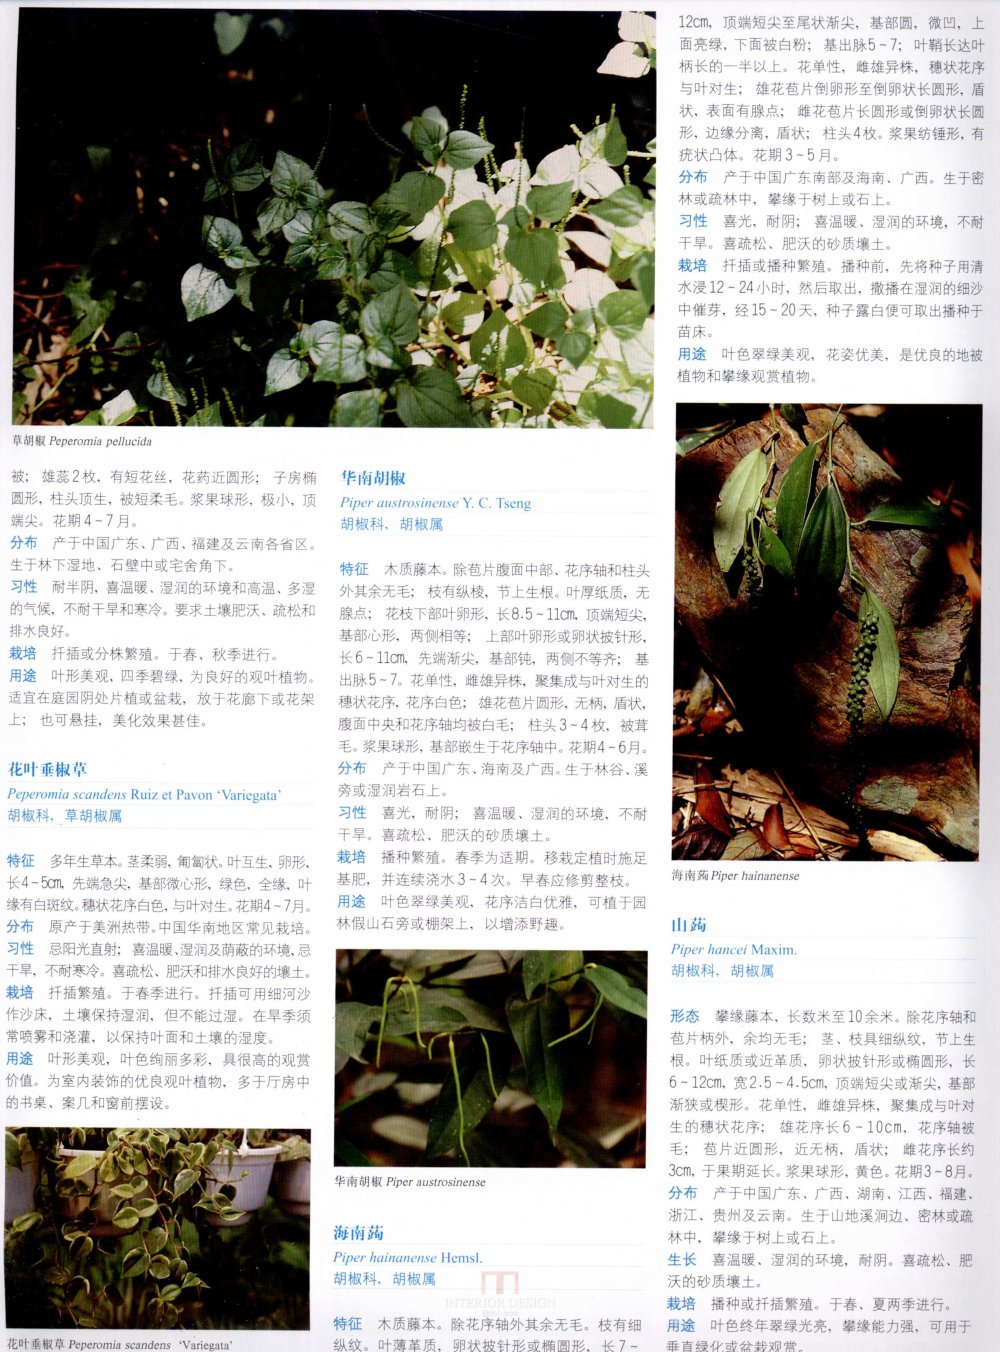 中国景观植物上(中)_0279.jpg